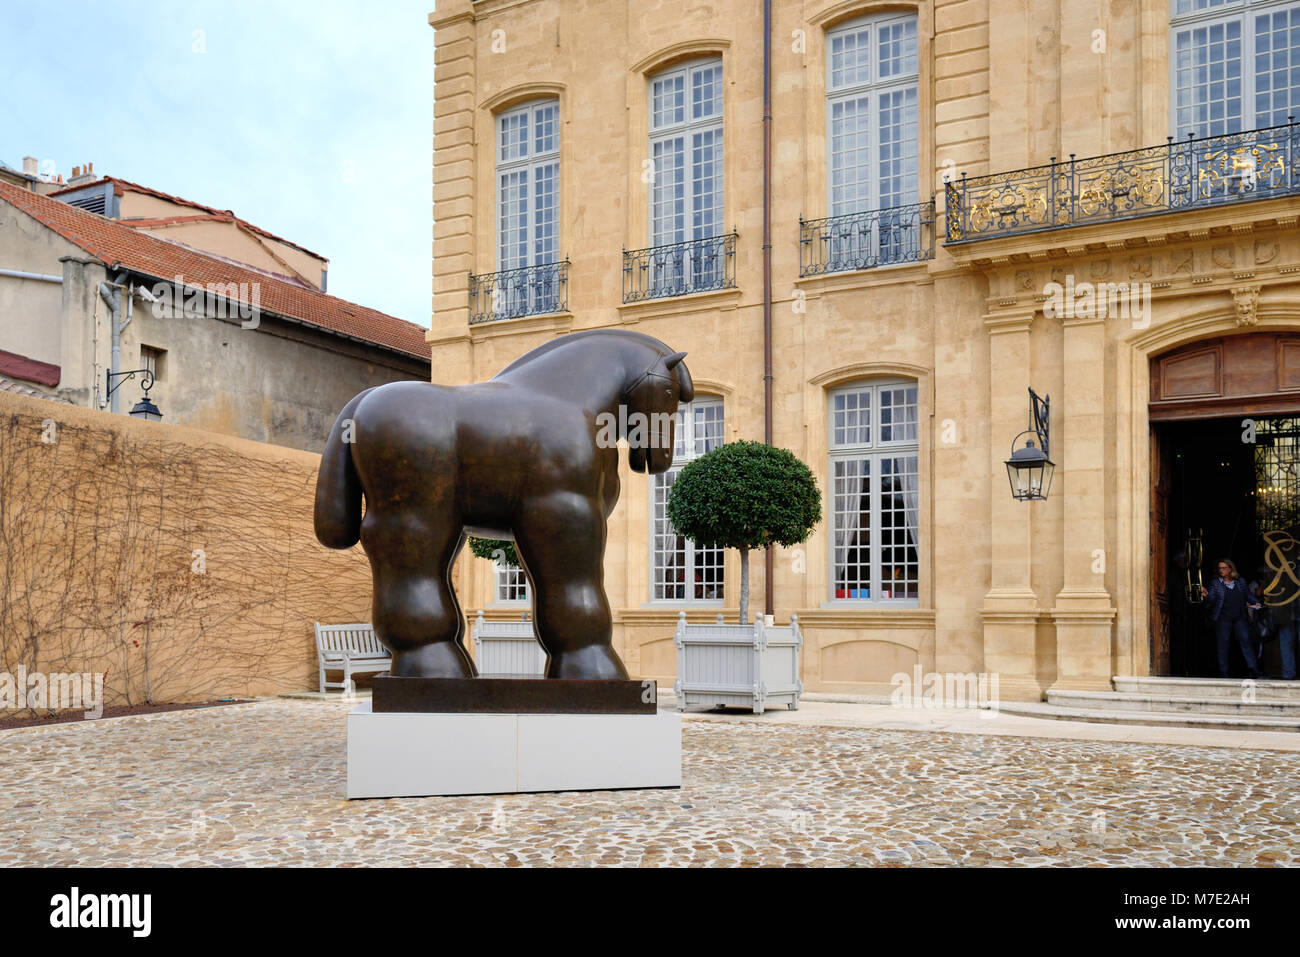 Pferd von Fernando Botero, Innenhof des Hôtel de Caumont Arts Center, ein c 18 Villa, Reihenhaus oder Hôtel Particulier, Aix-en-Provence, Frankreich Stockfoto